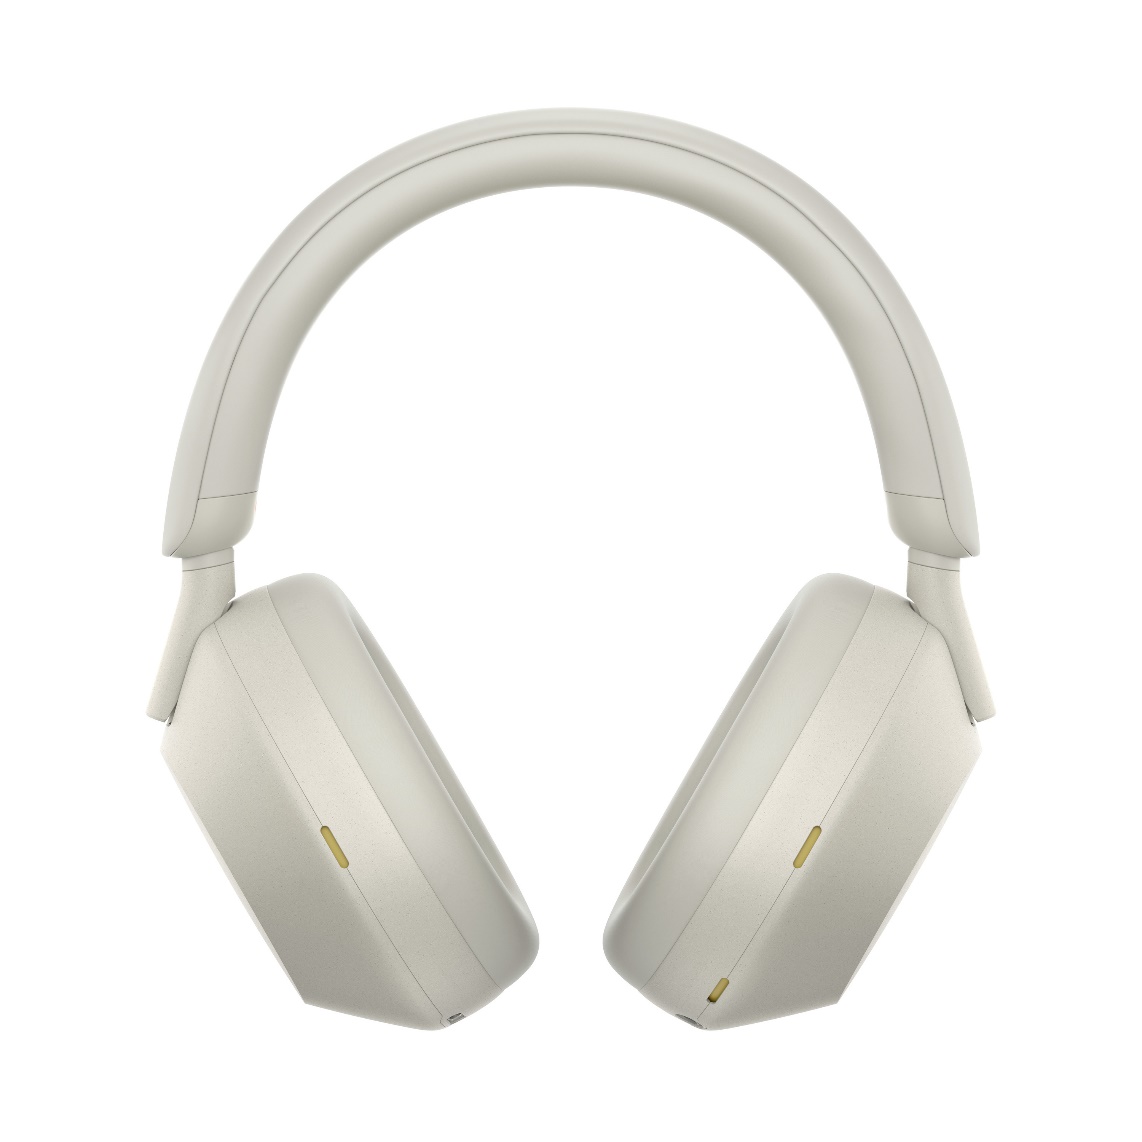 Sony giới thiệu tai nghe WH-1000XM5 - Đỉnh cao tai nghe chống ồn thế hệ mới - Ảnh 1.